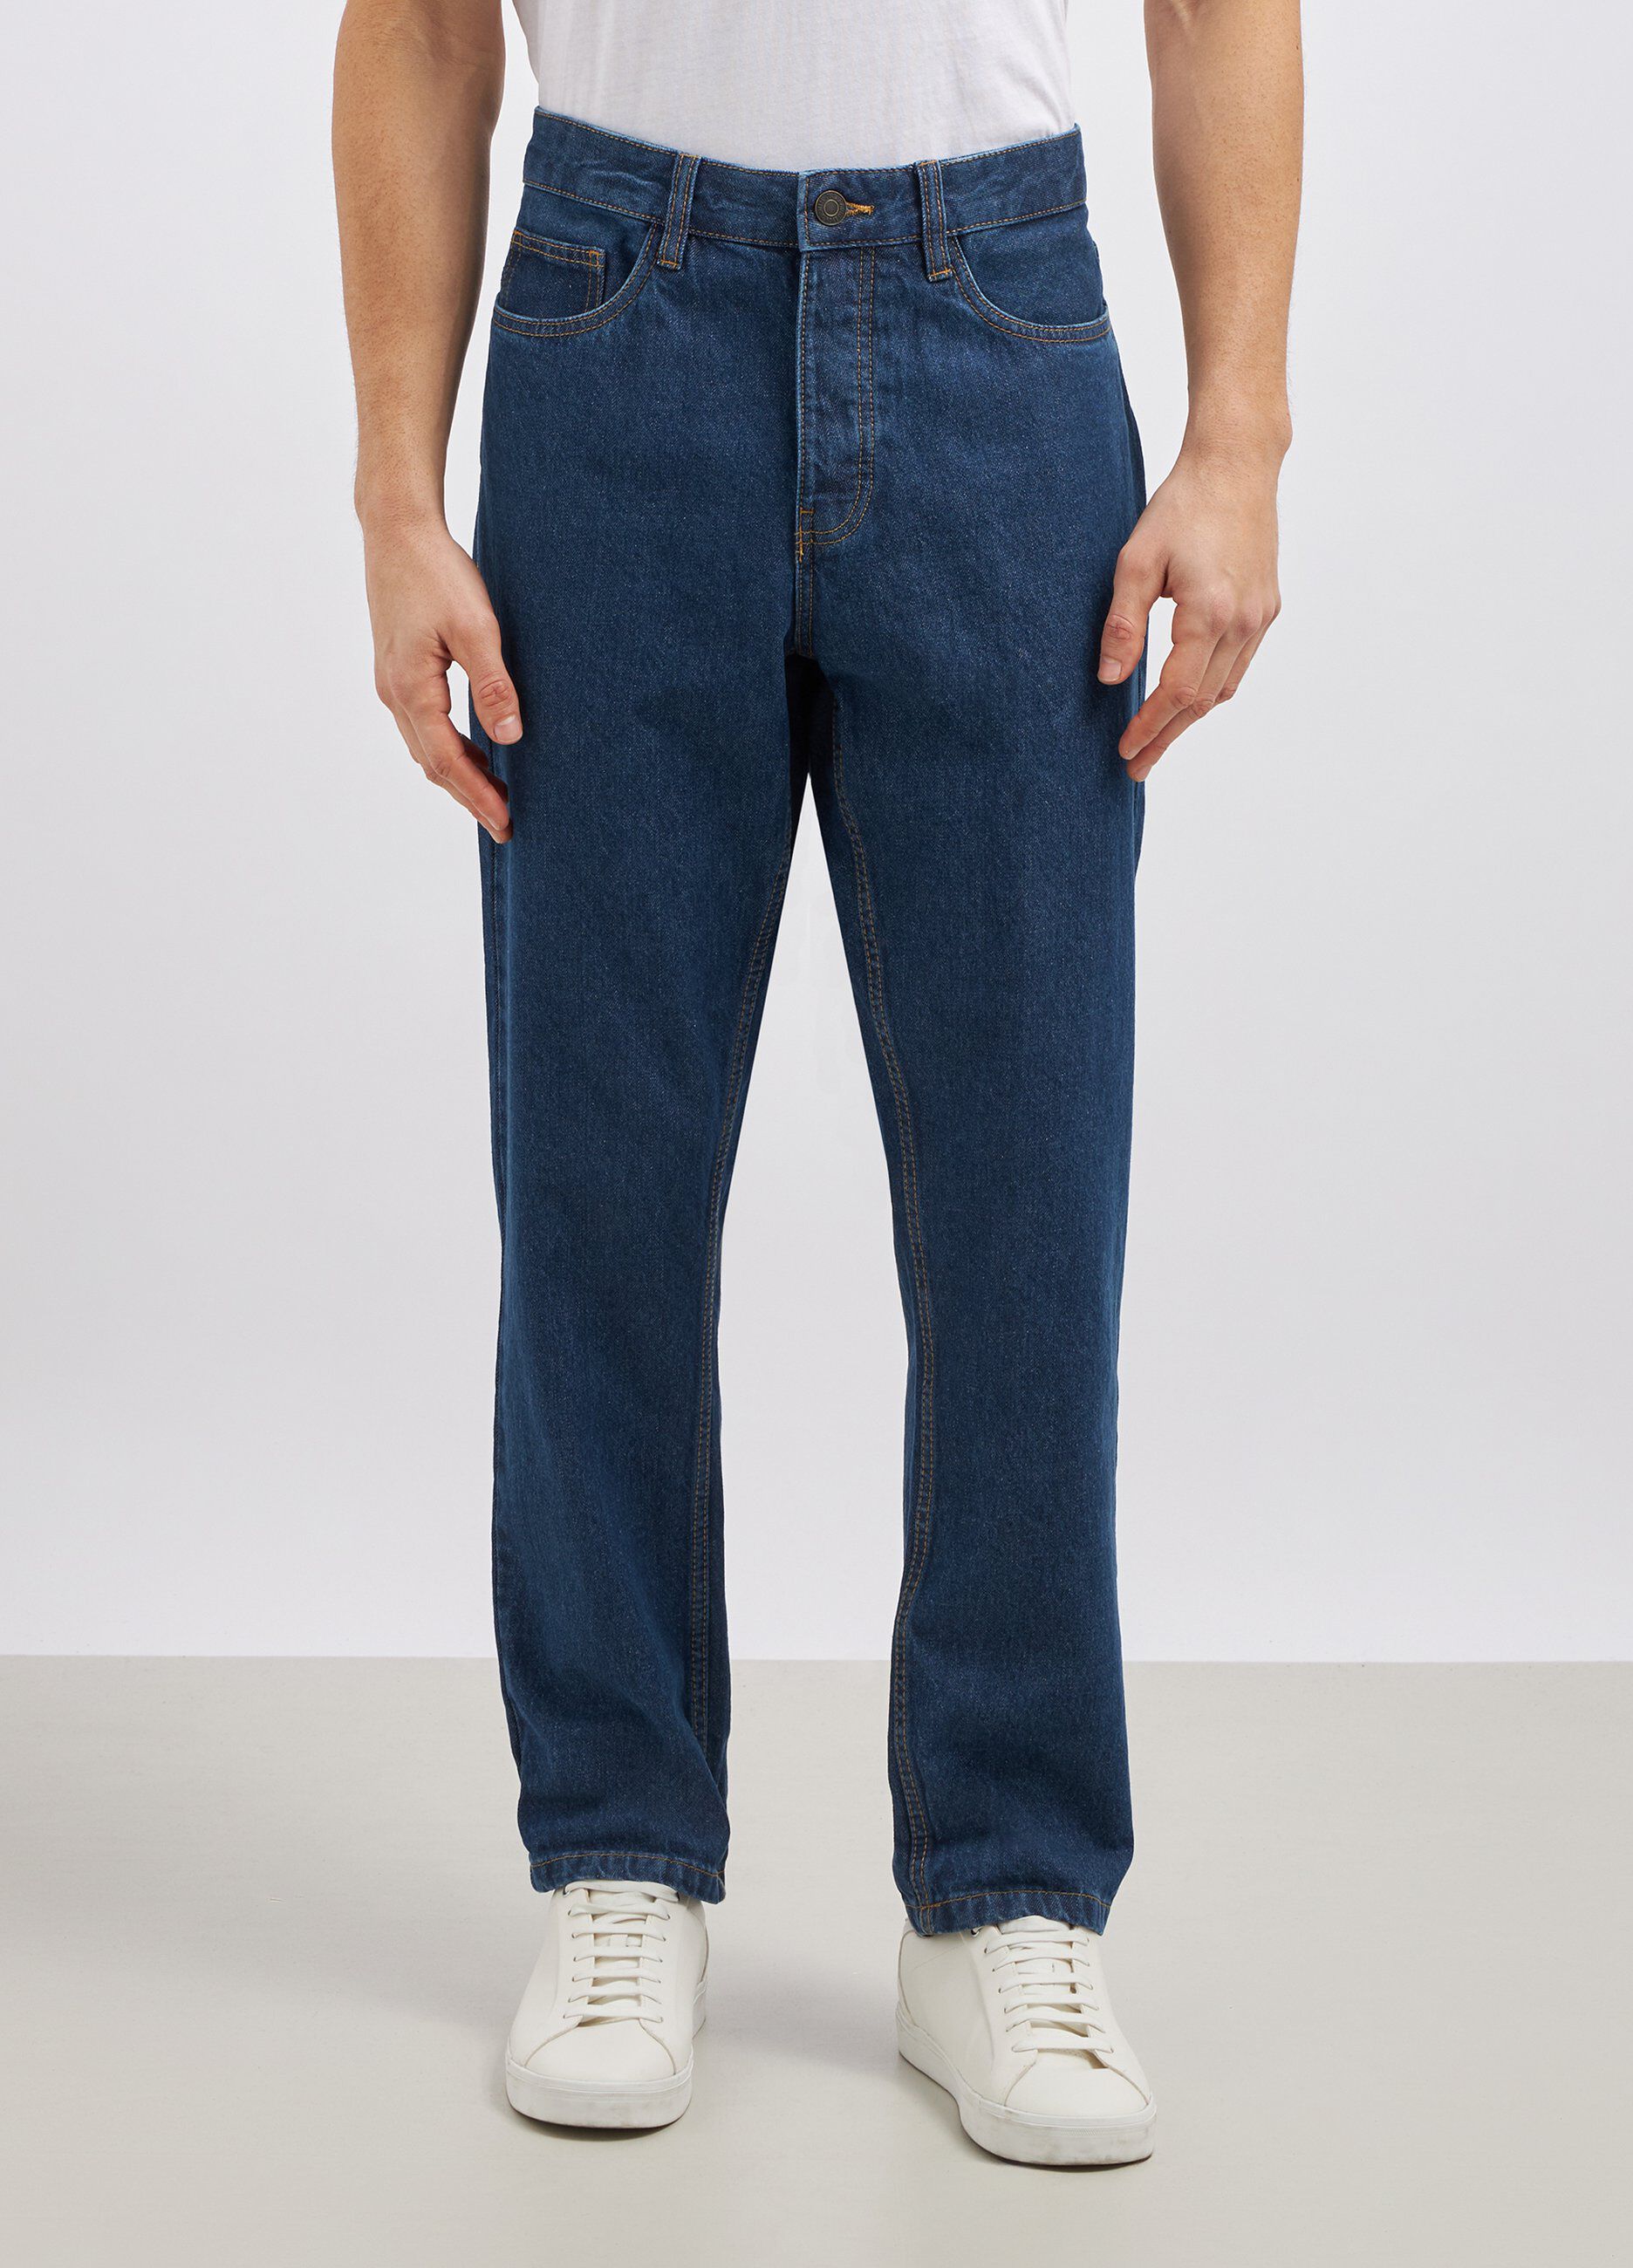 Jeans straight in puro cotone uomo_1